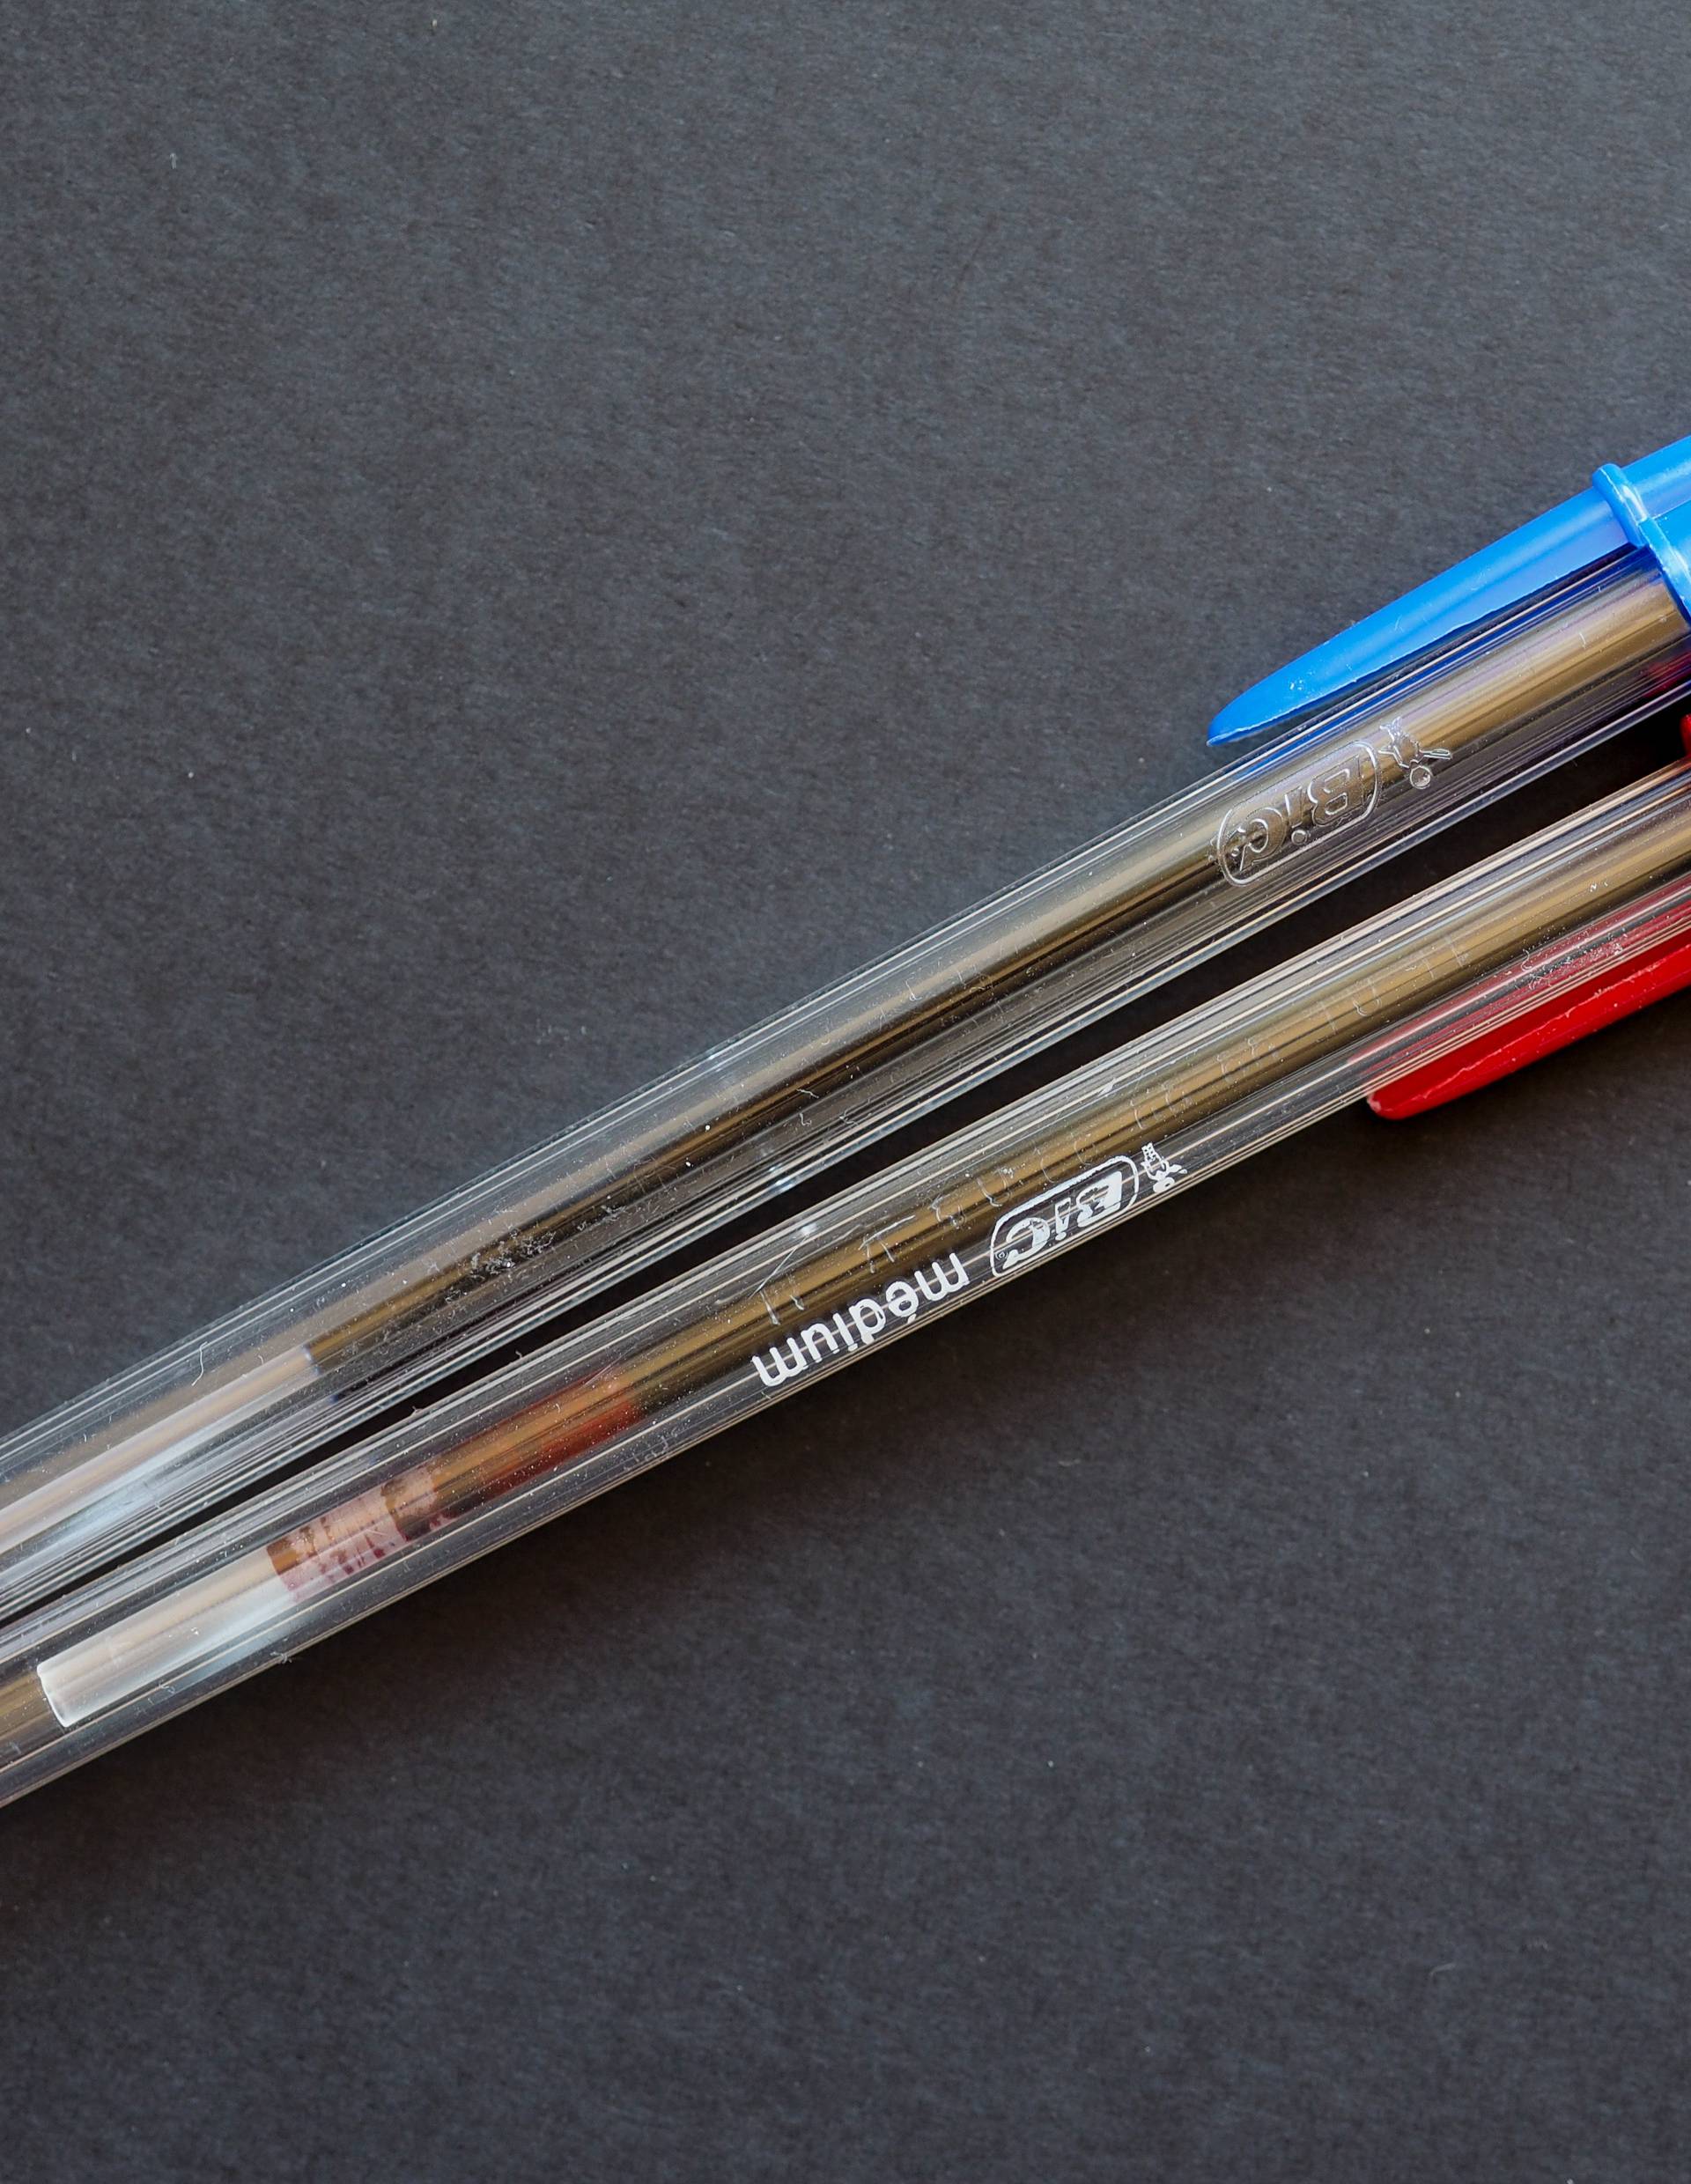 Znate li čemu služi mala rupa na poklopcu kemijske olovke?